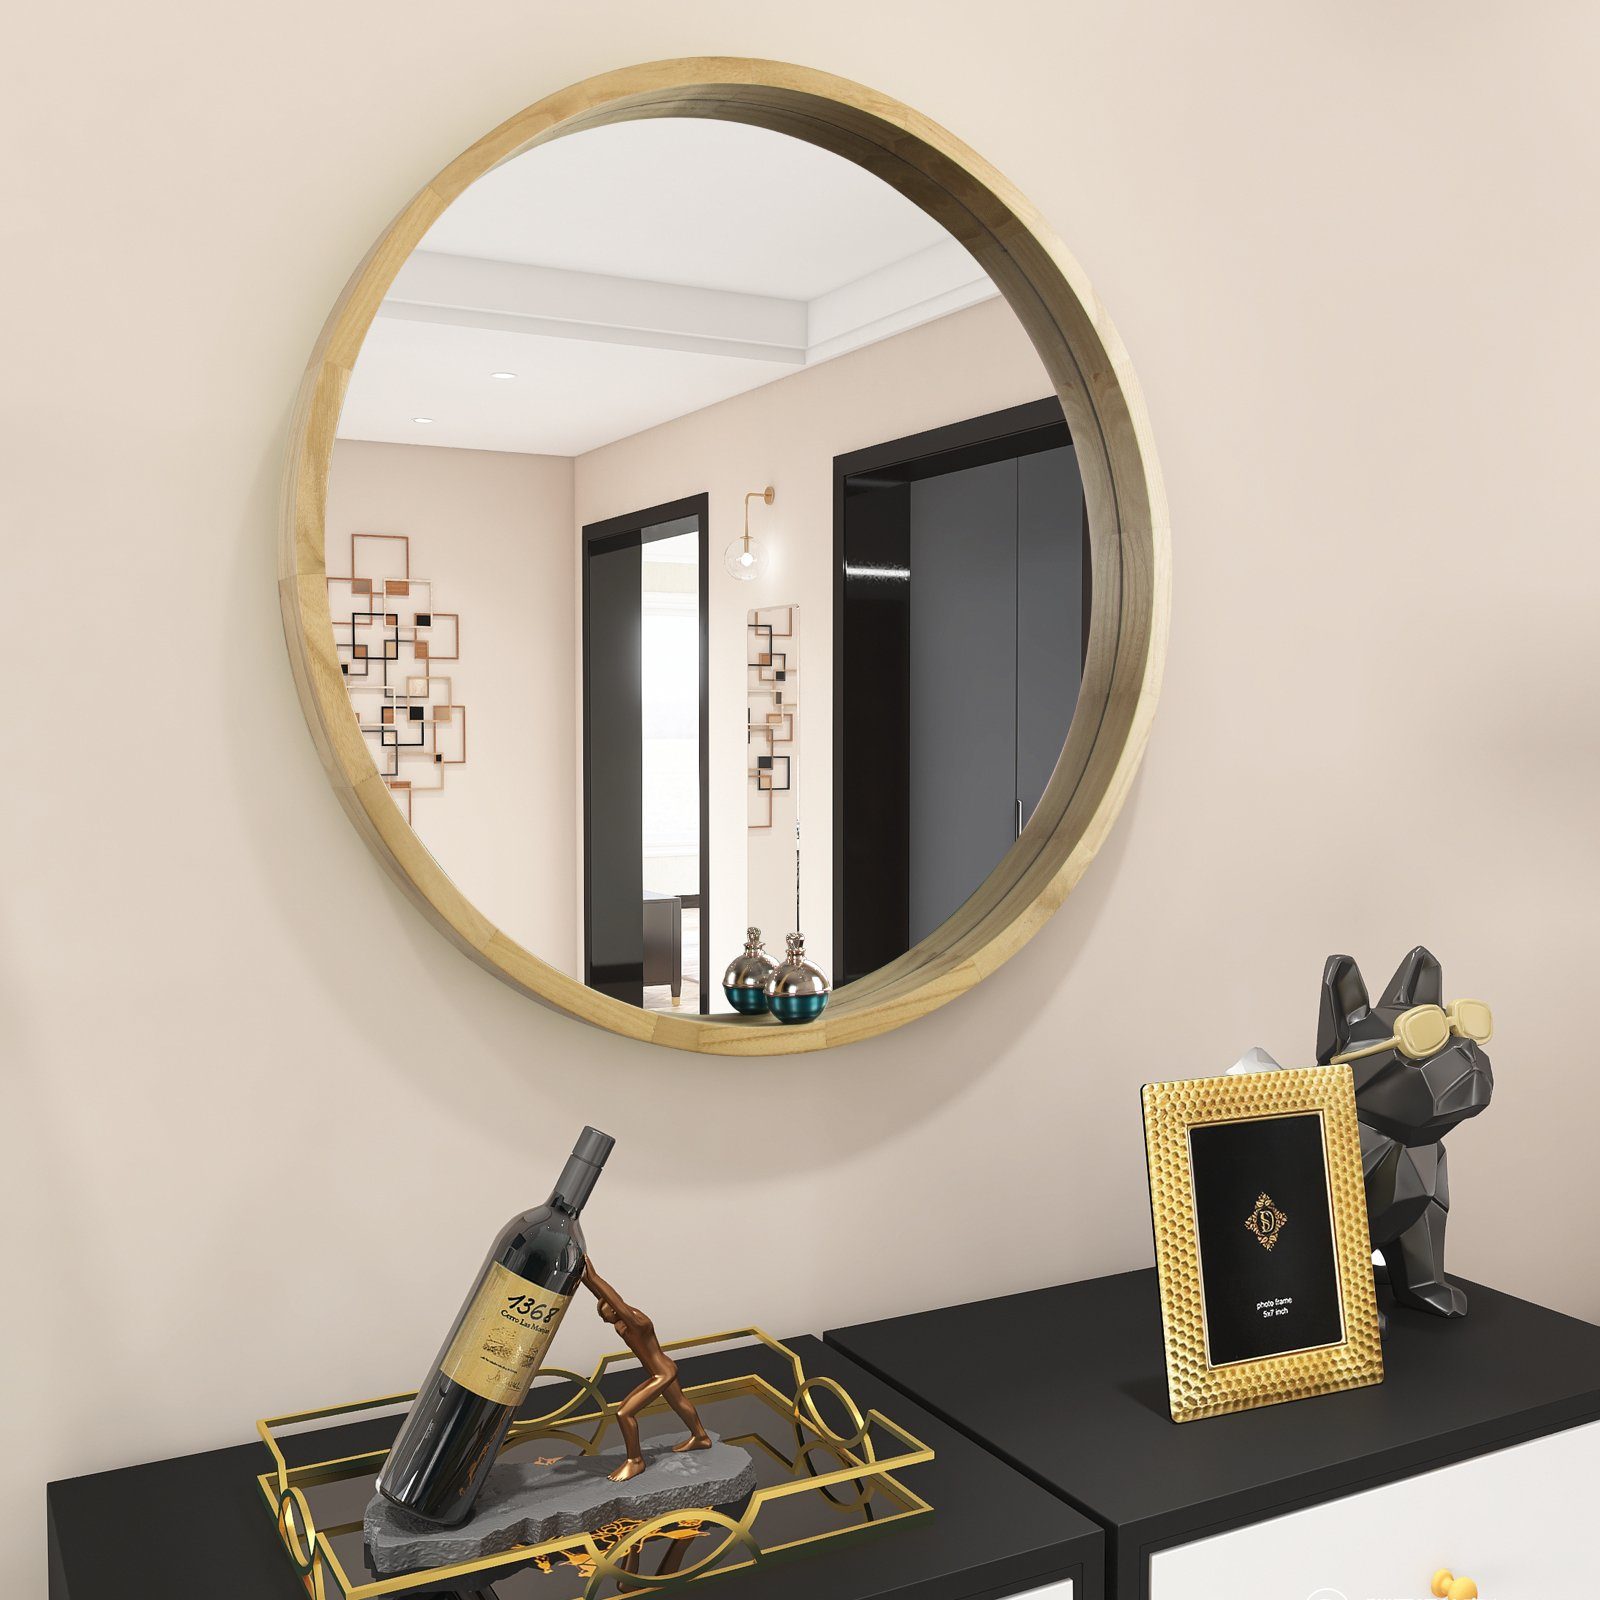 PHOEBE CAT Wandspiegel, Rund Wandspiegel mit Rahmen, Ø76.5 cm Ø61 cm  Schminkspiegel Badezimmerspiegel für Bad-, Schlaf-, Ankleide- oder  Wohnzimmer online kaufen | OTTO